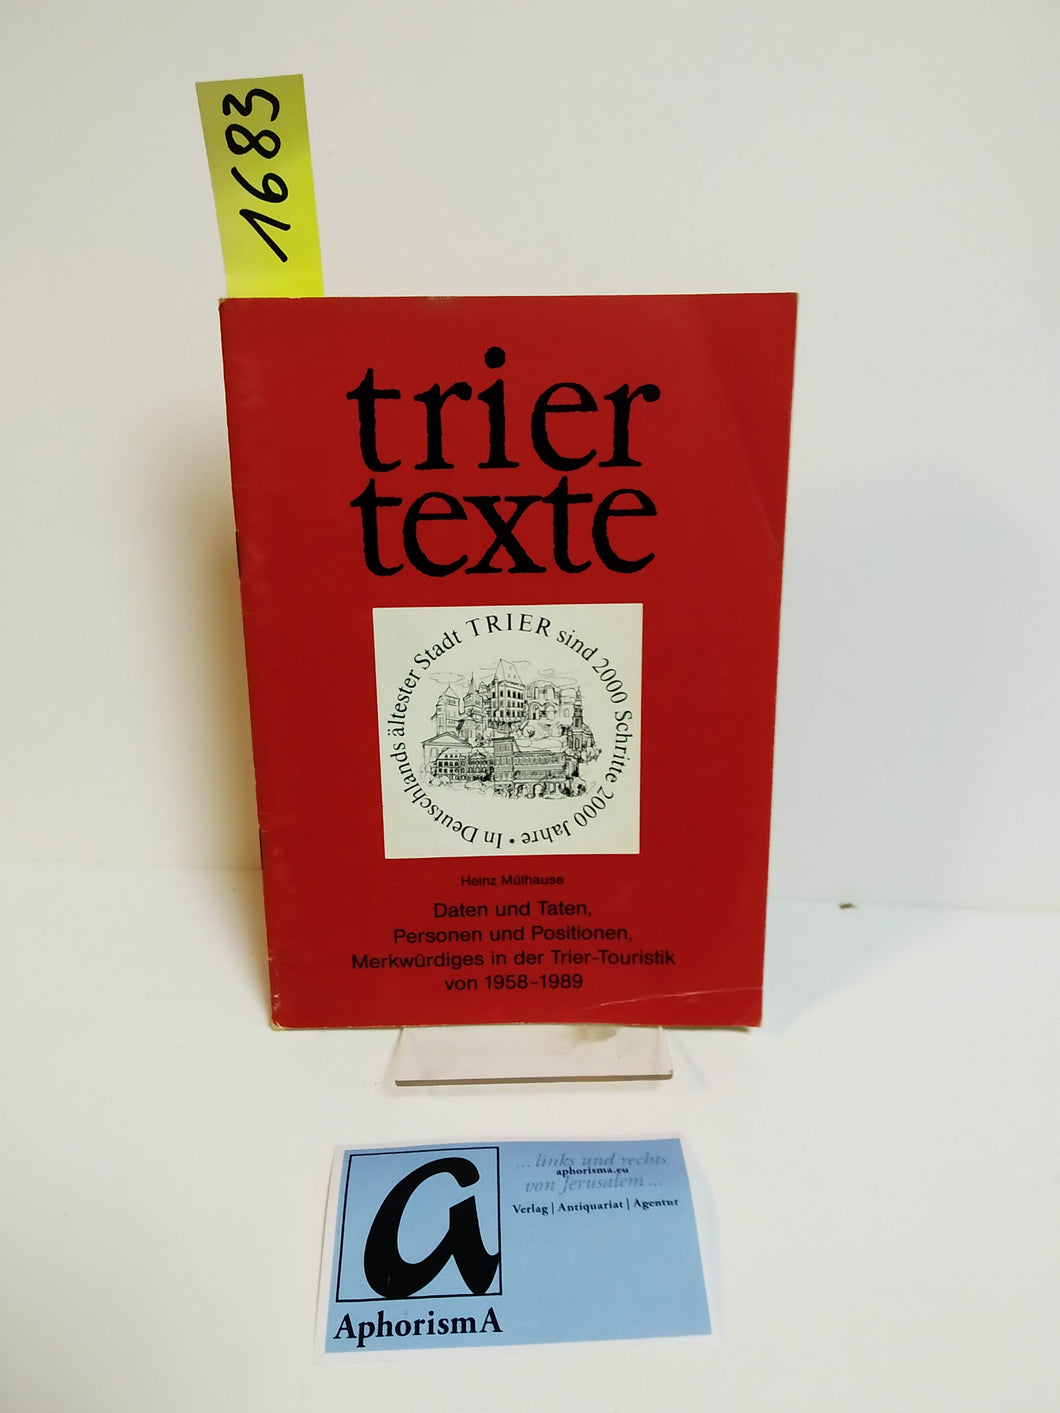 Daten und Taten, Personen und Positionen, Merkwürdiges in der Trier-Touristik von 1958-1989